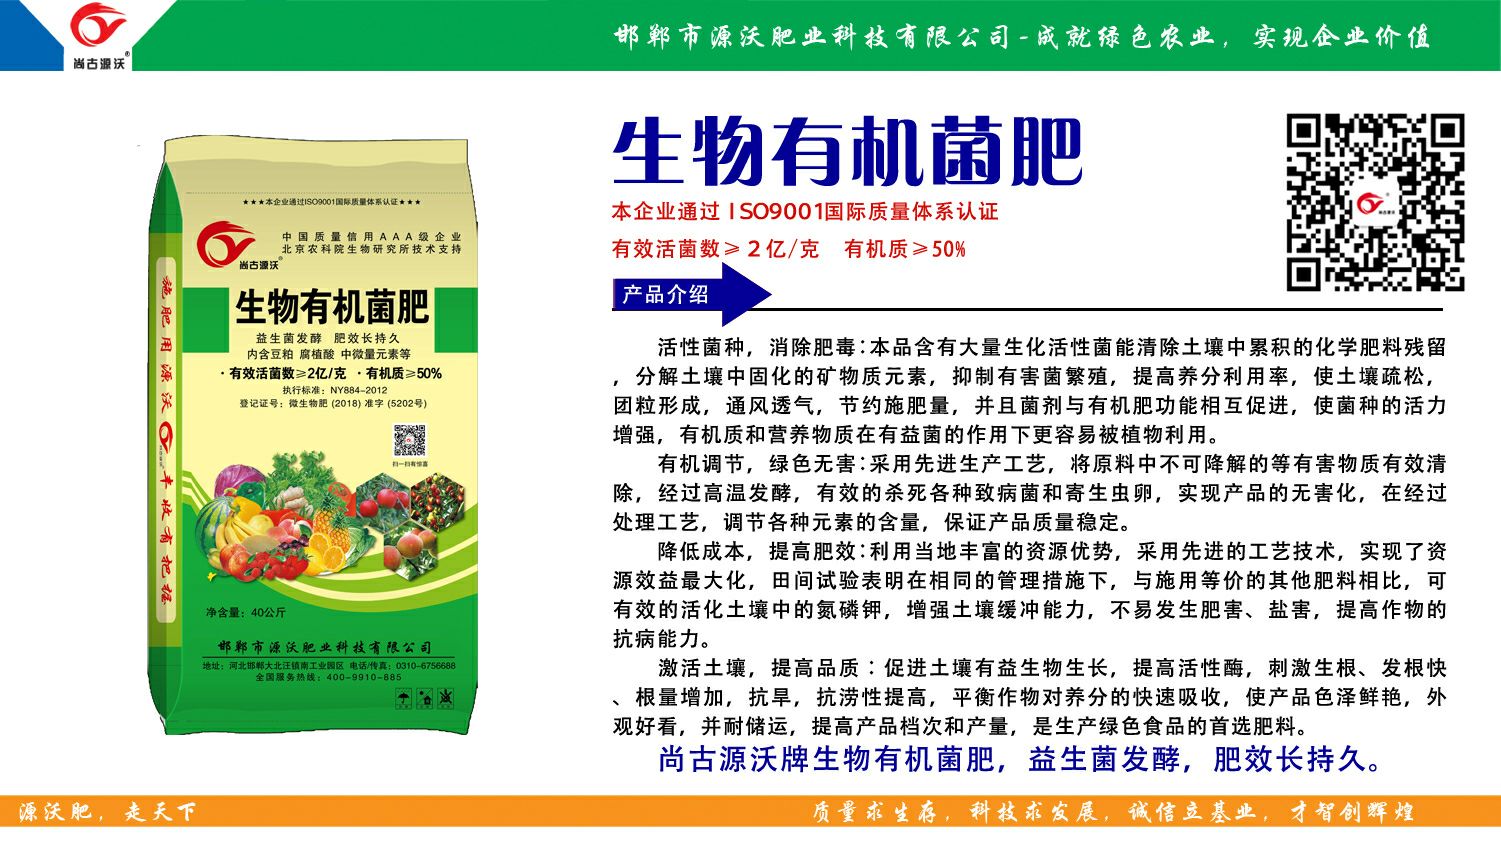 菌肥  测土配方施肥项目单位。
北京农科院生物研究所技术支持